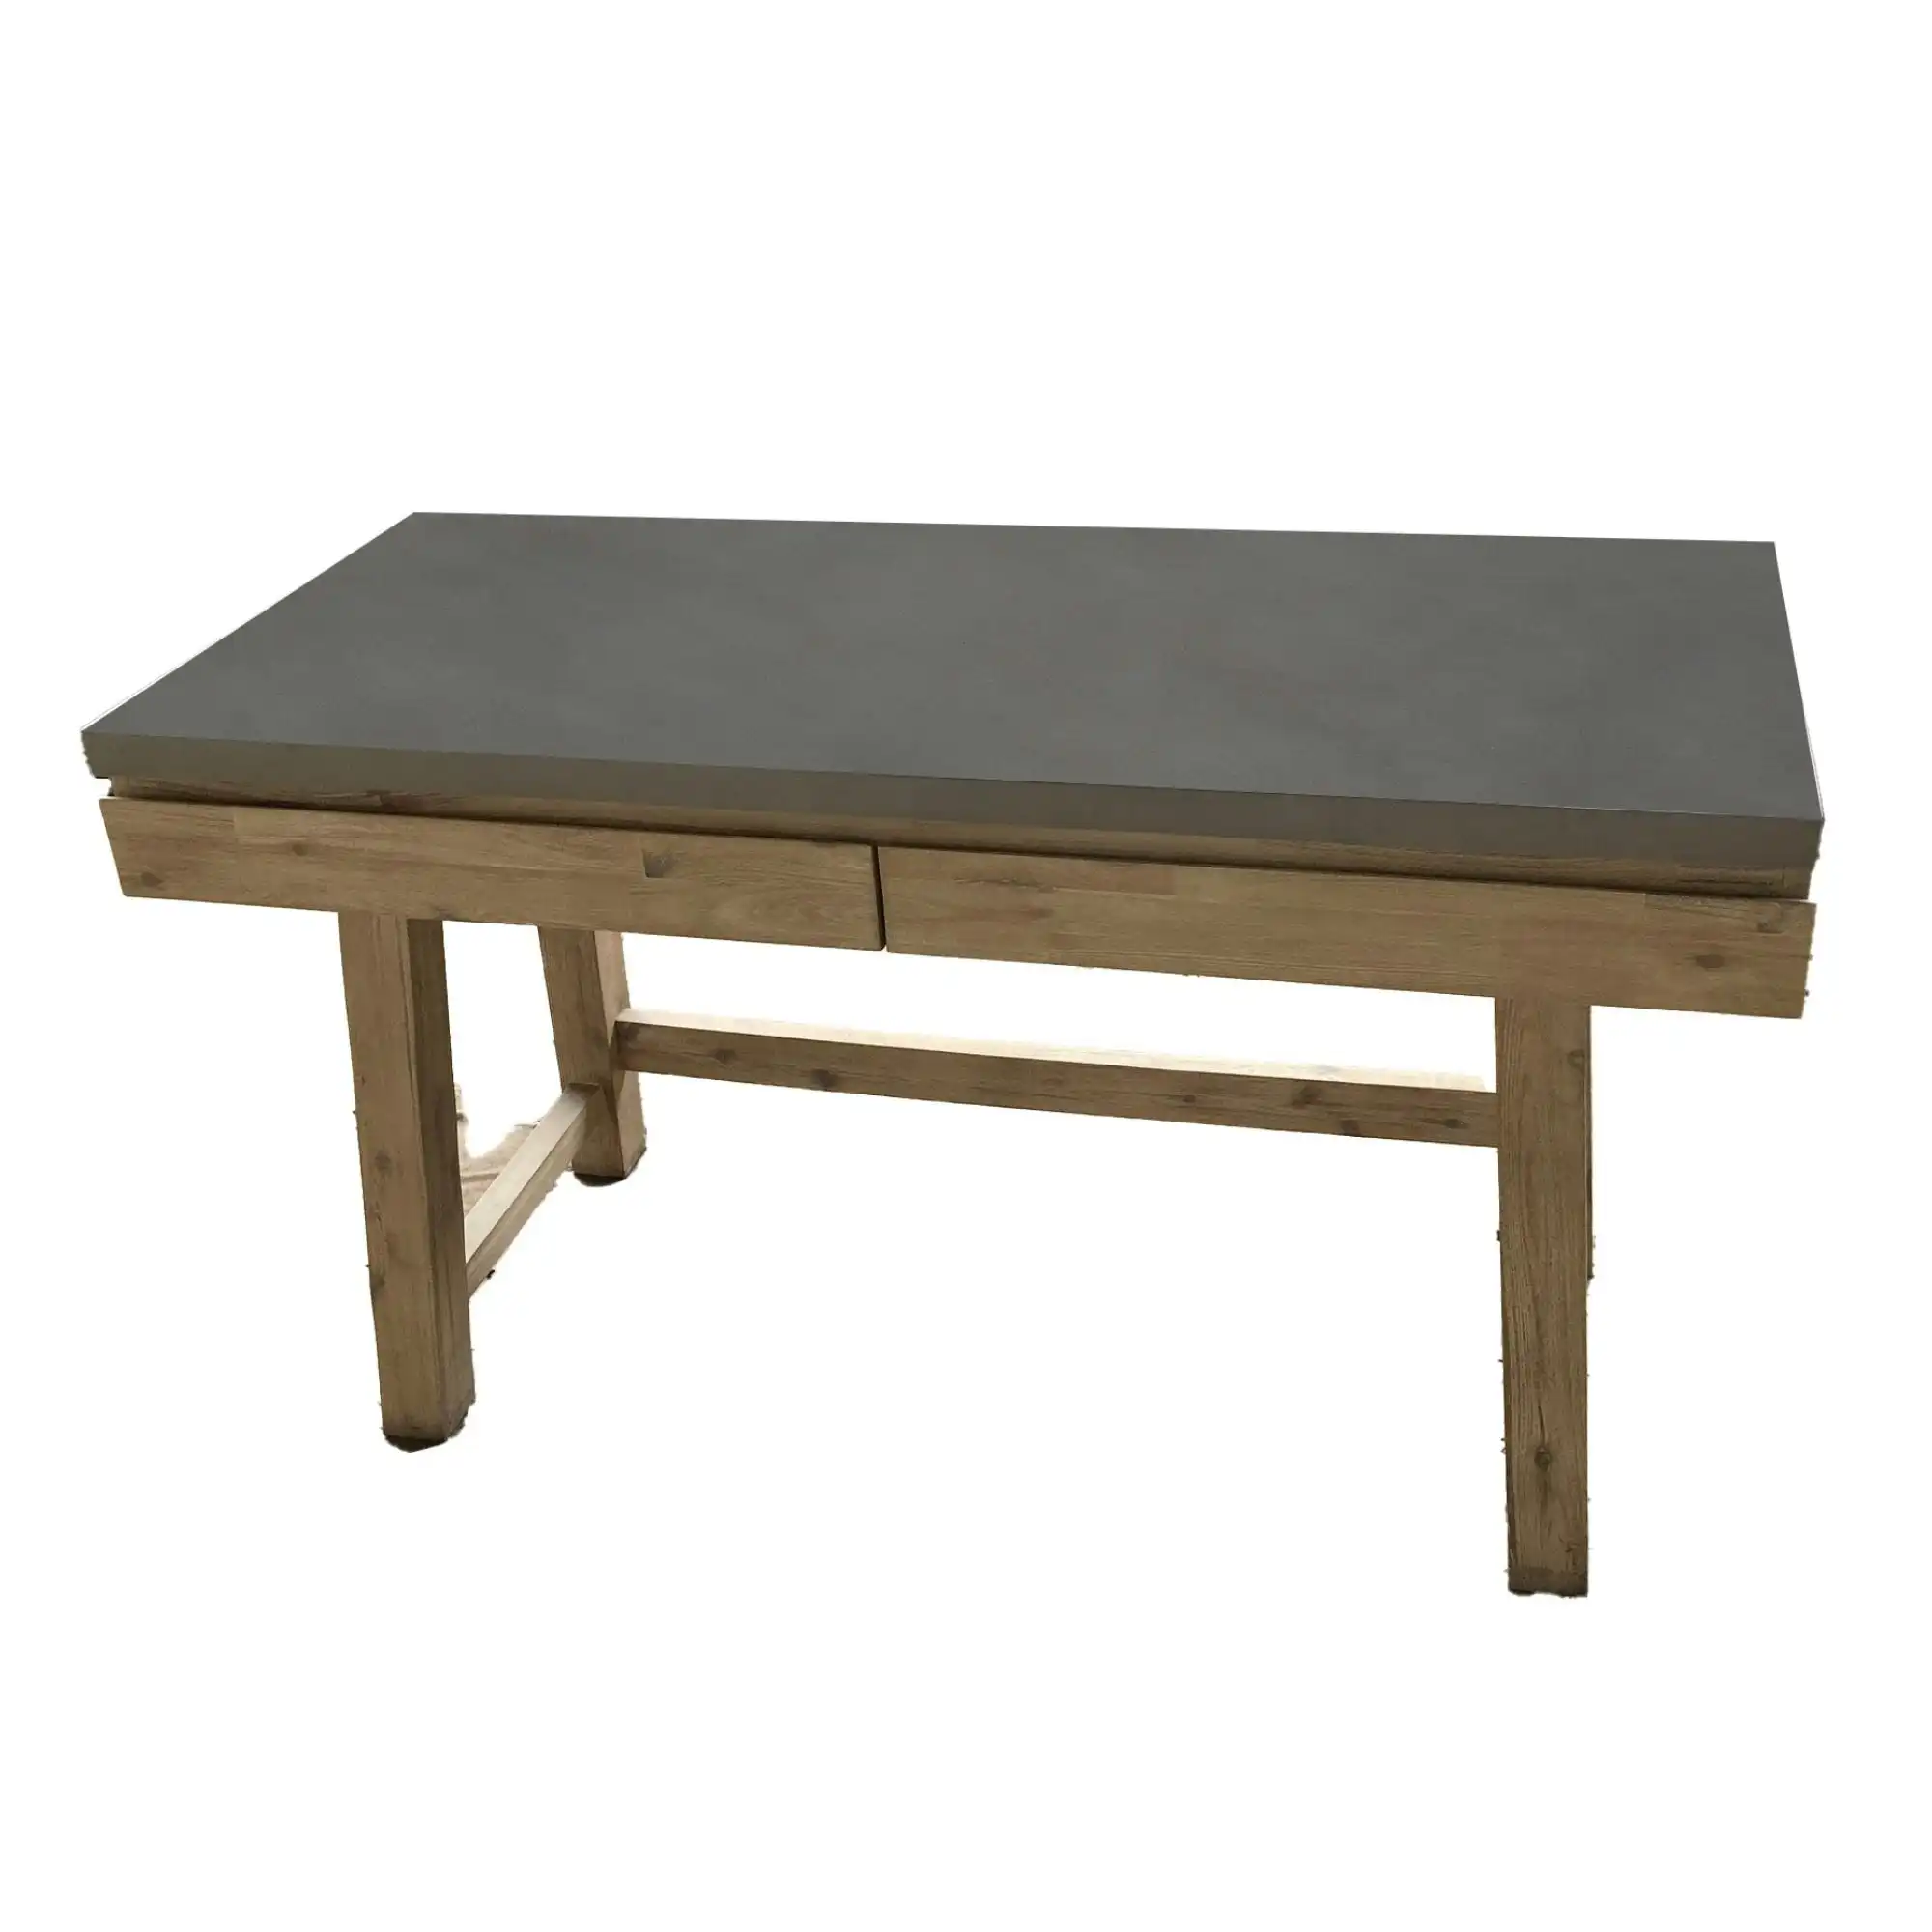 Stony 140cm Desk with Concrete Top